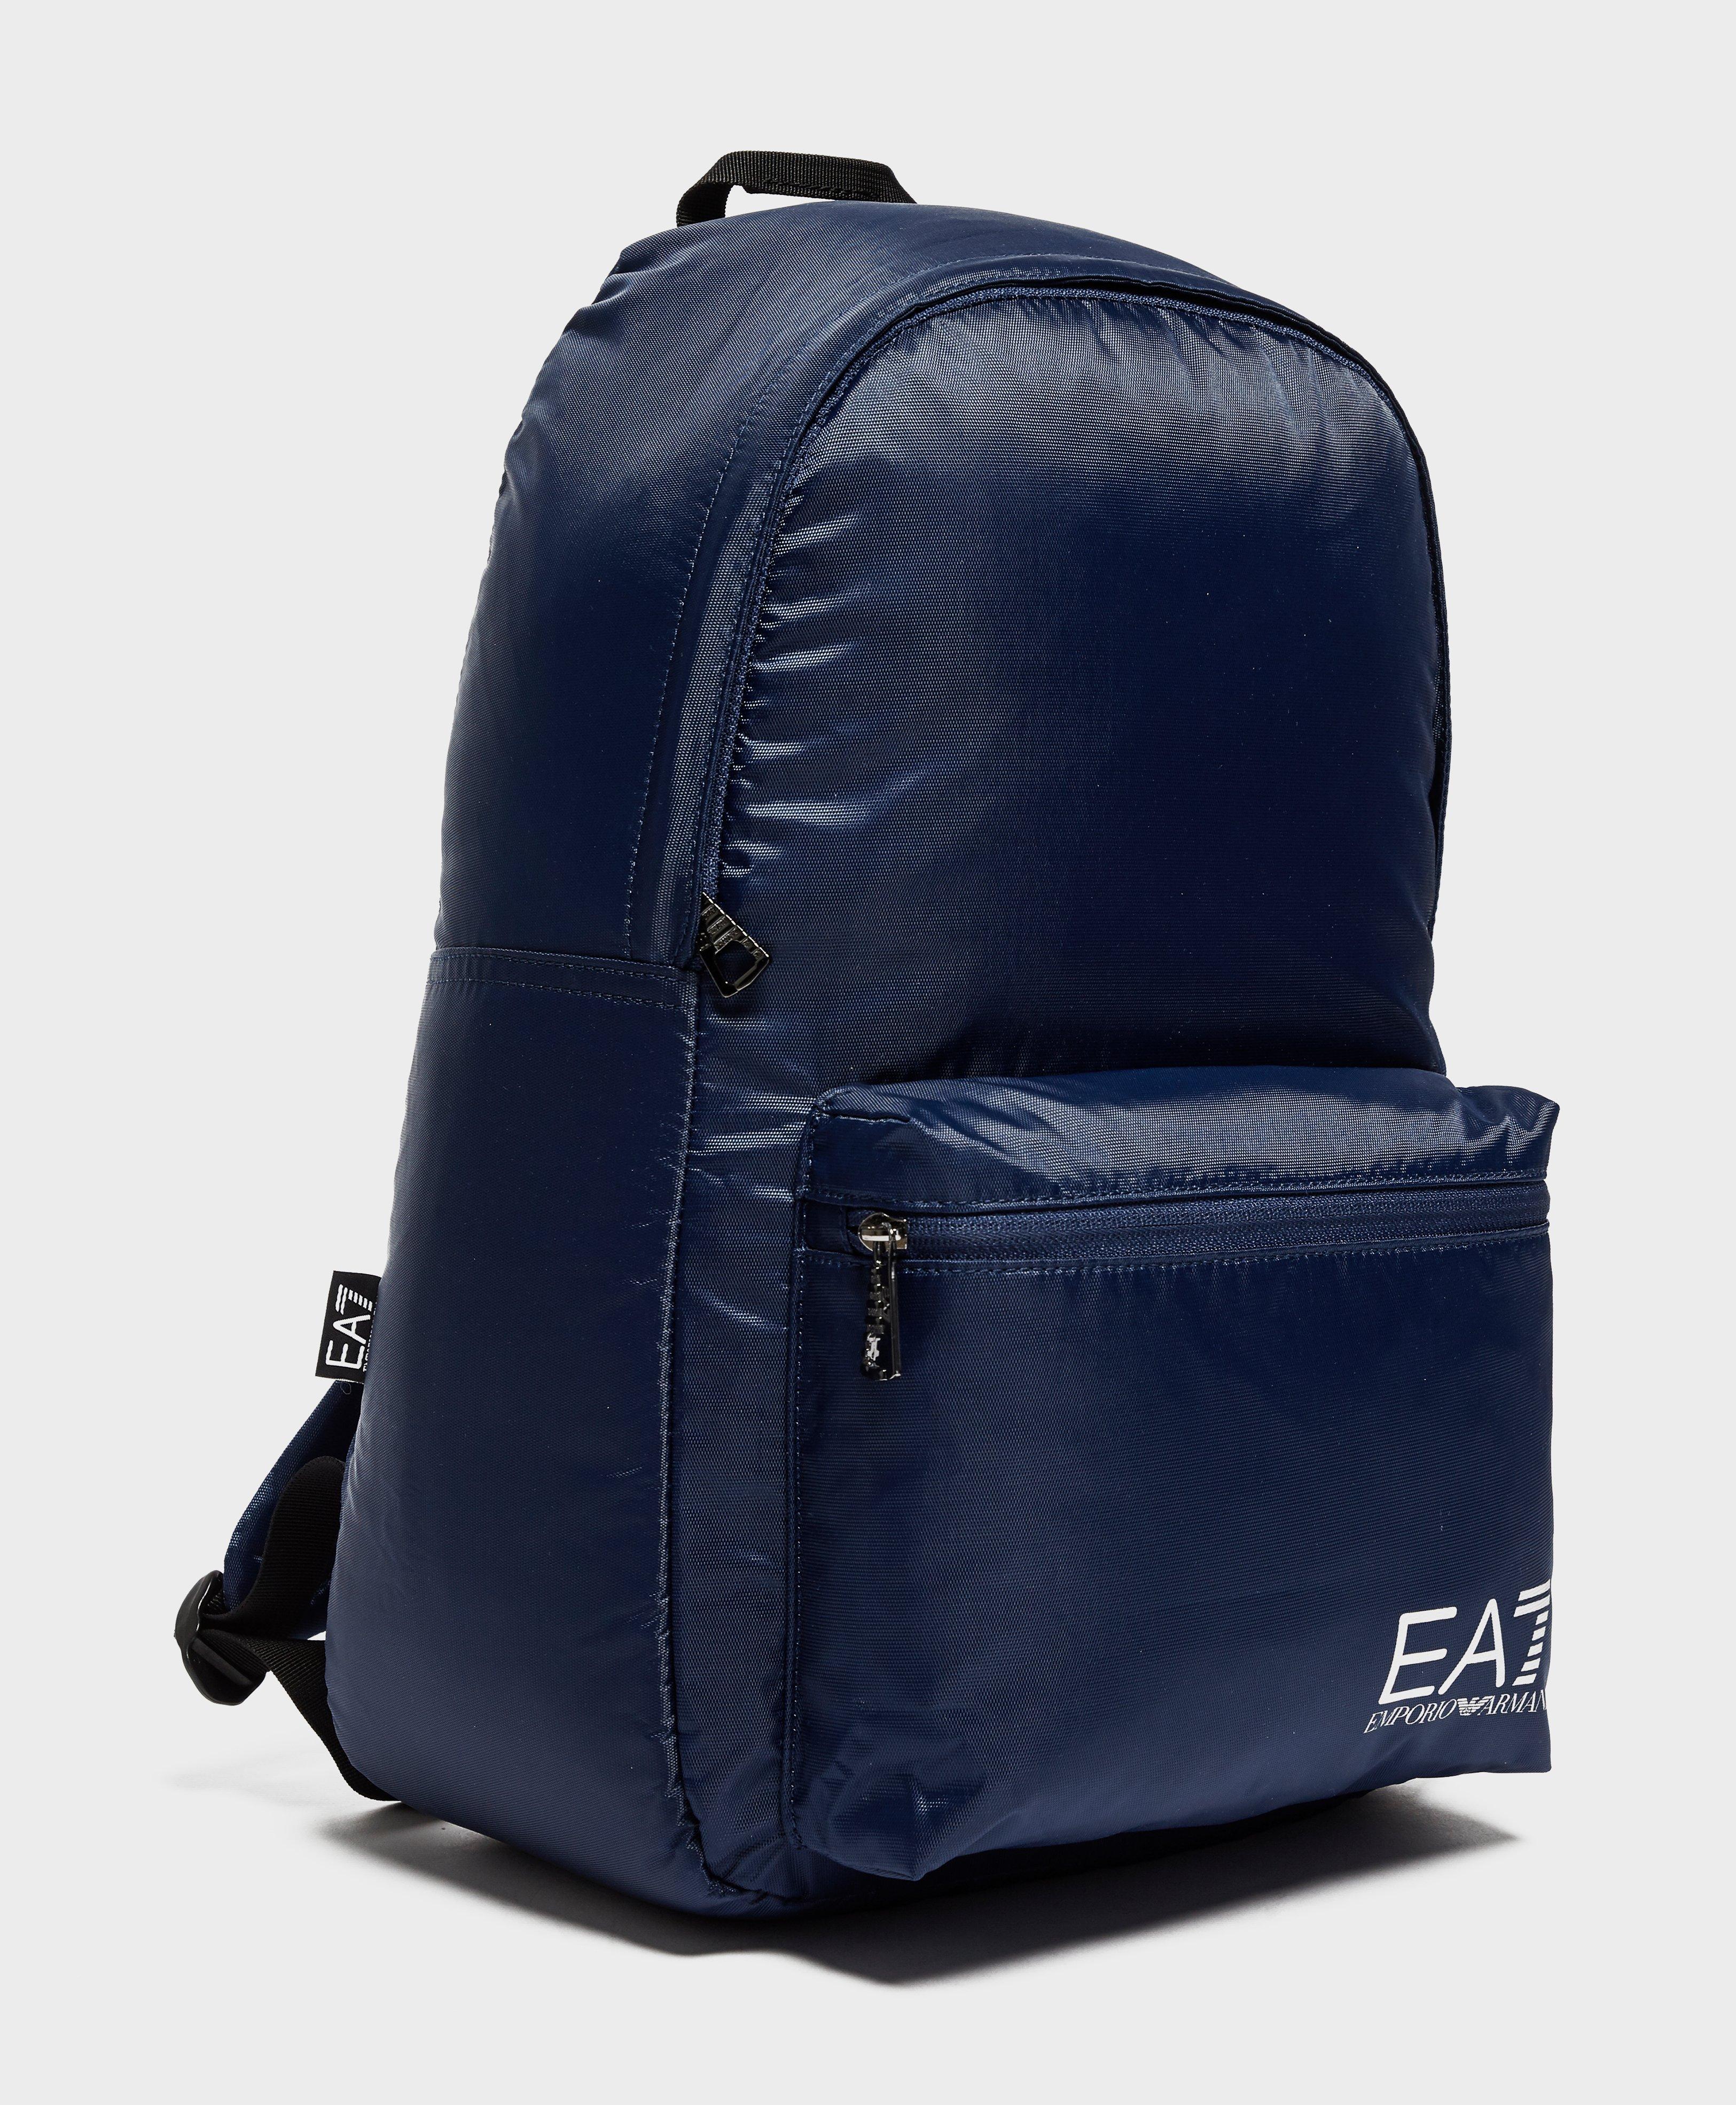 emporio armani ea7 train core backpack